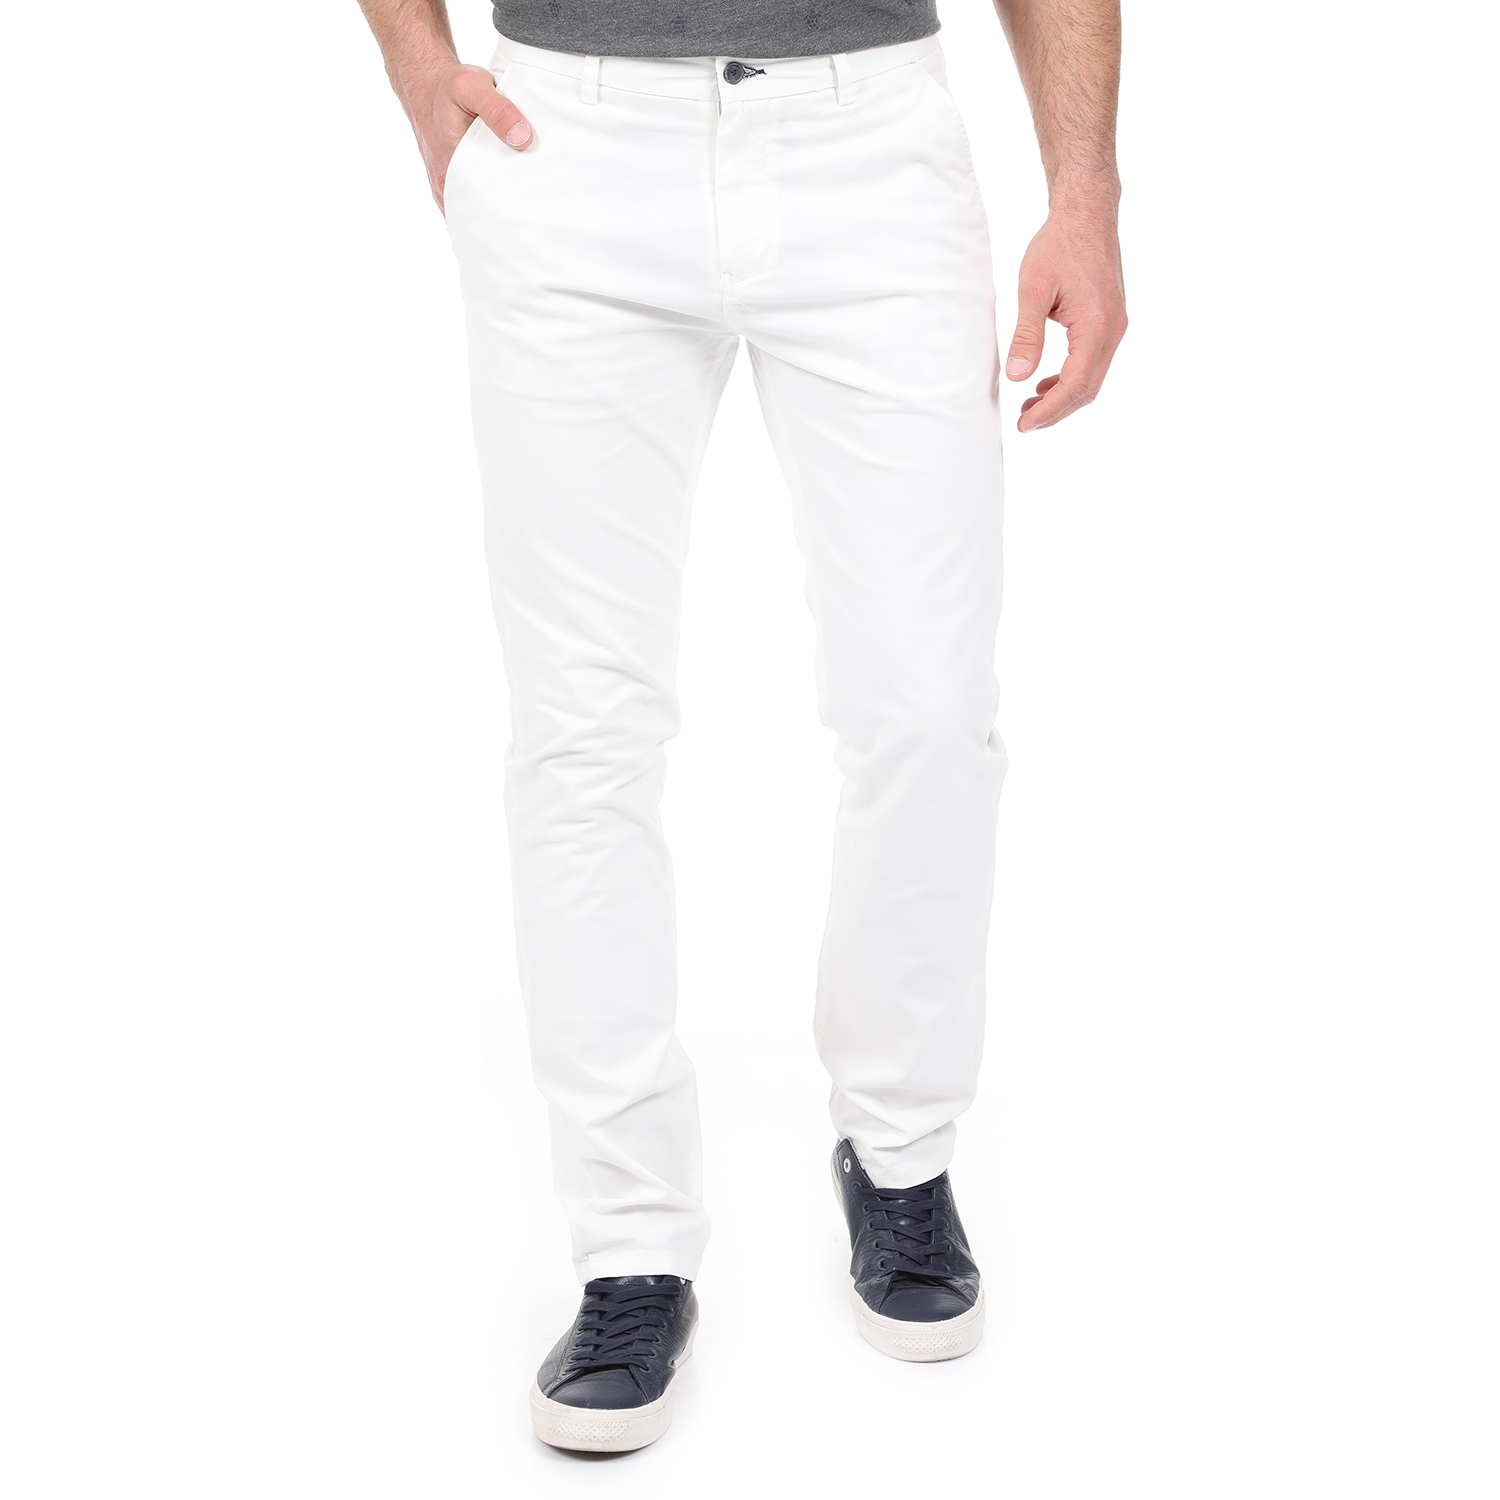 Ανδρικά/Ρούχα/Παντελόνια/Chinos DORS - Ανδρικό chino παντελόνι DORS λευκό